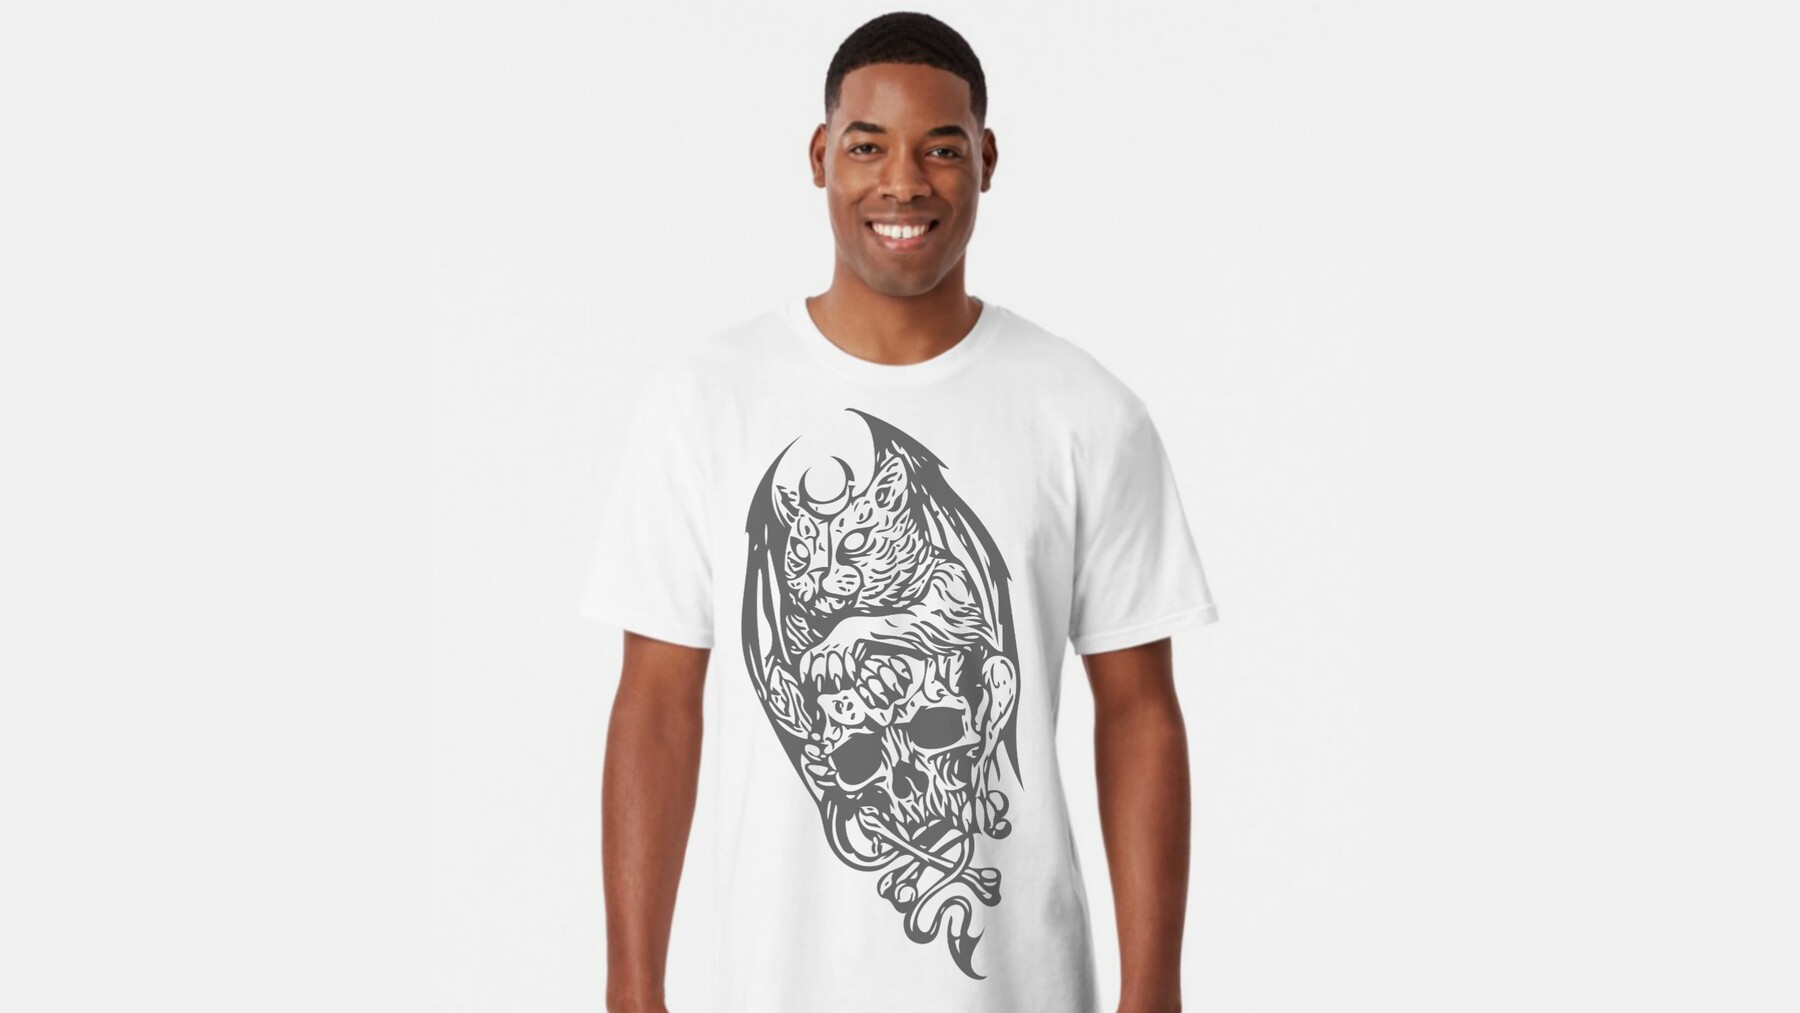 ArtStation - Skull t shirt design | Artworks